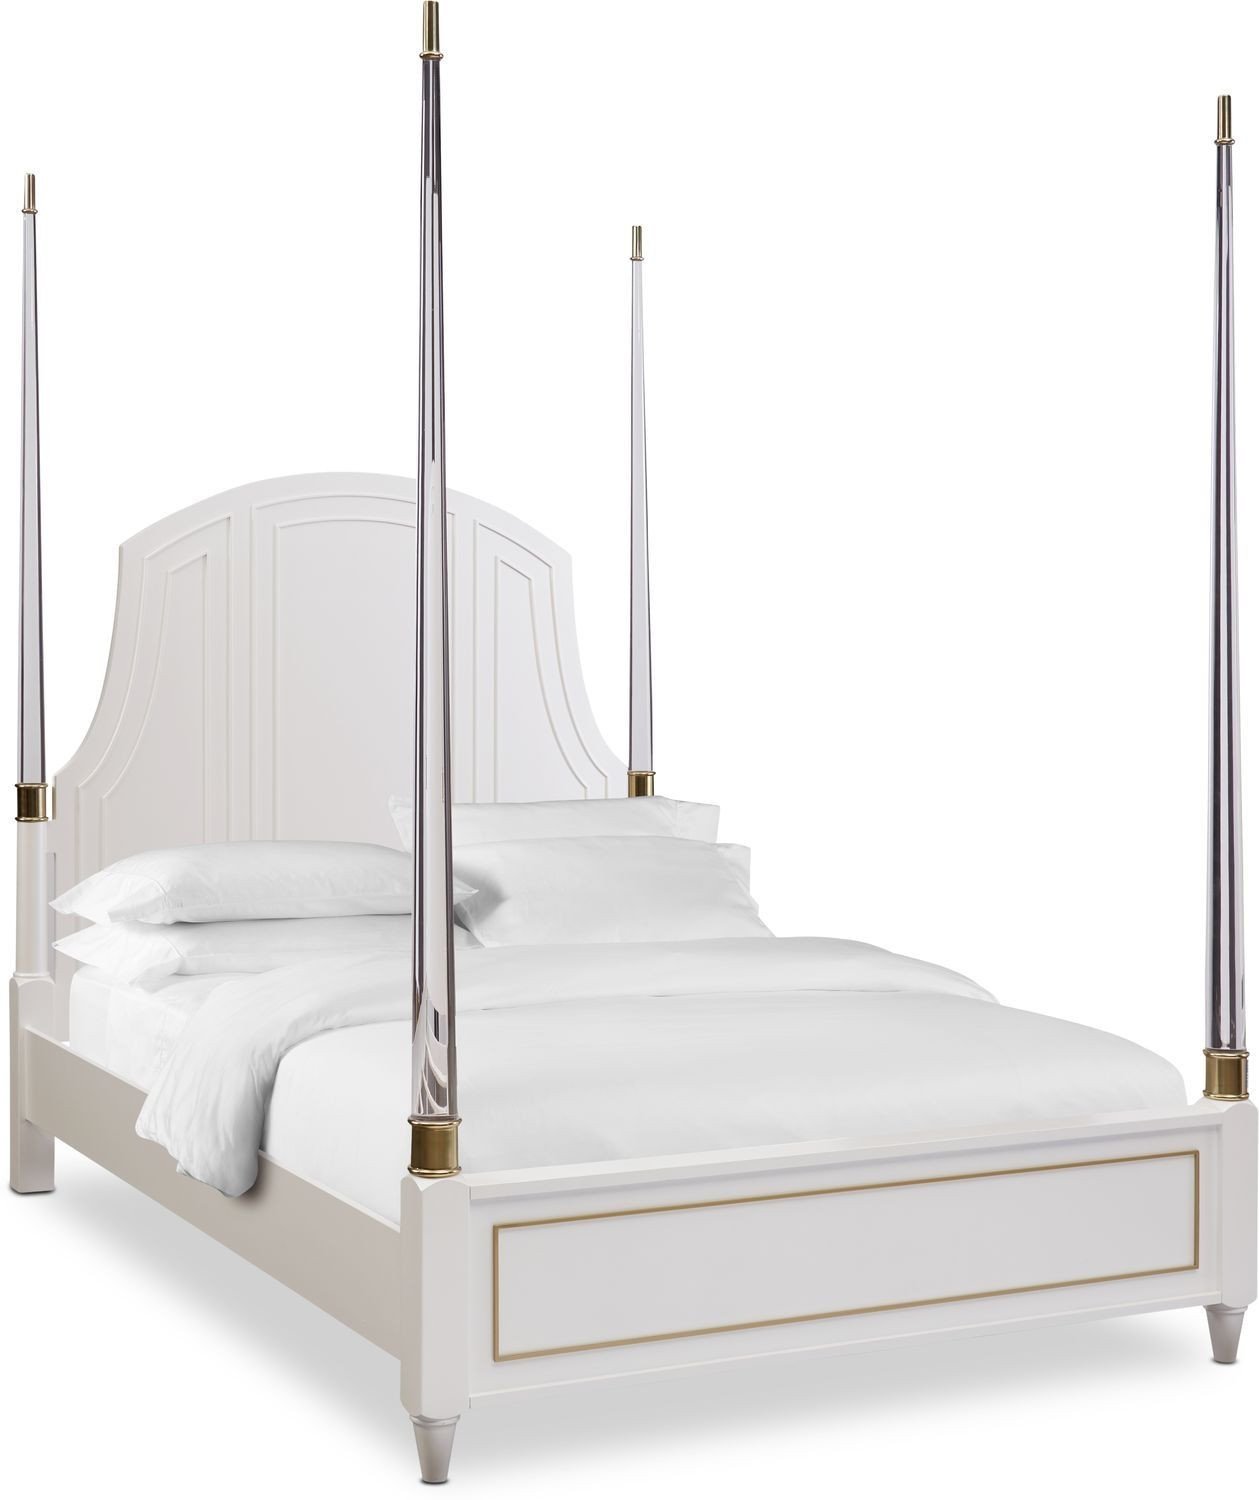 Value City Bedroom Furniture New isabel King Post Bed Alabaster In 2019